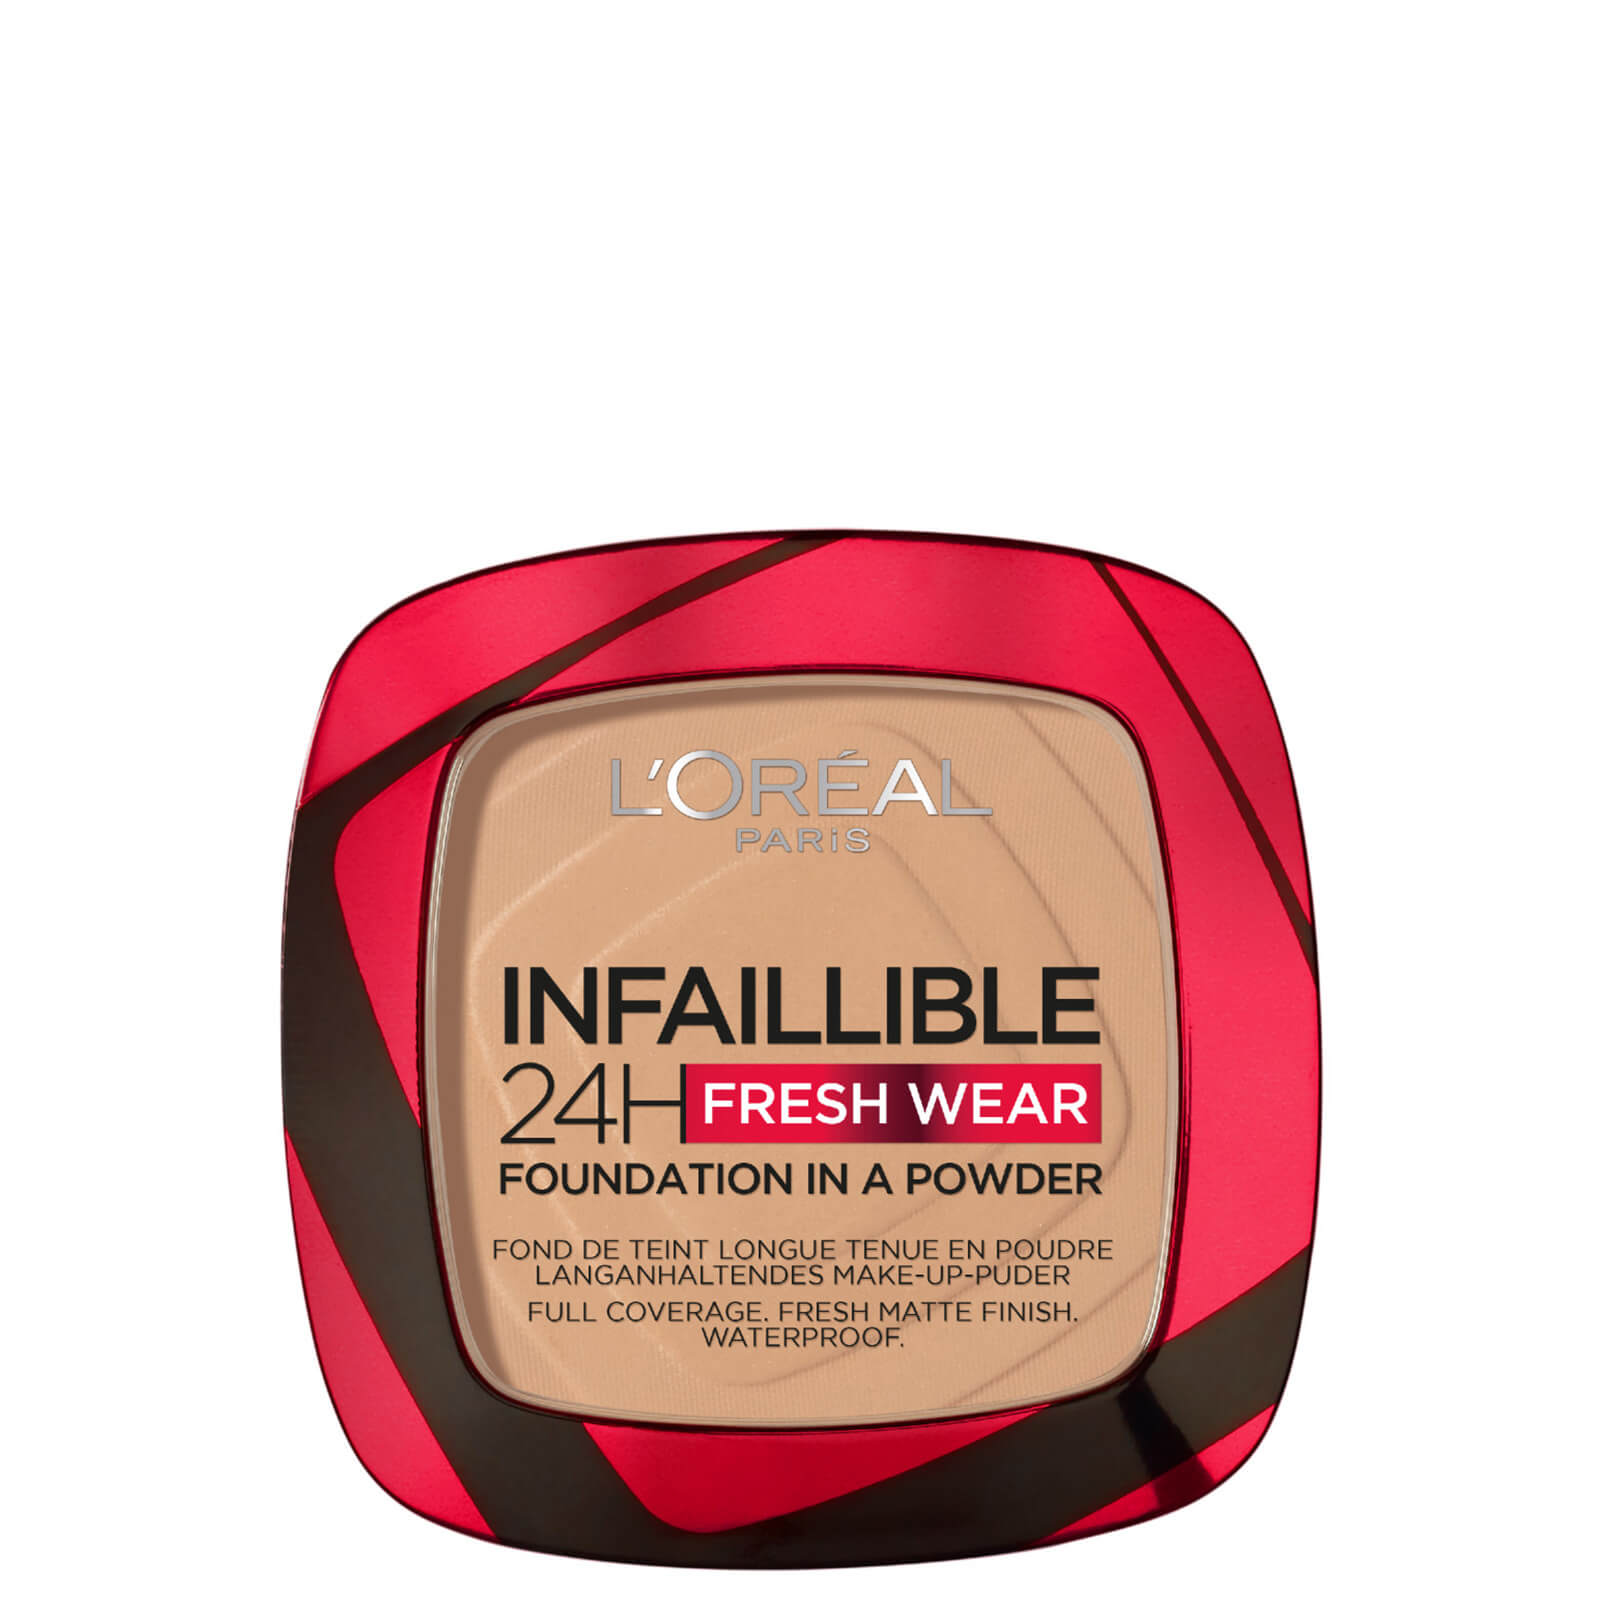 L'Oréal Paris Infallible 24 Hour Fresh Wear Foundation Powder 9g (Various Shades) - 140 Golden Beige